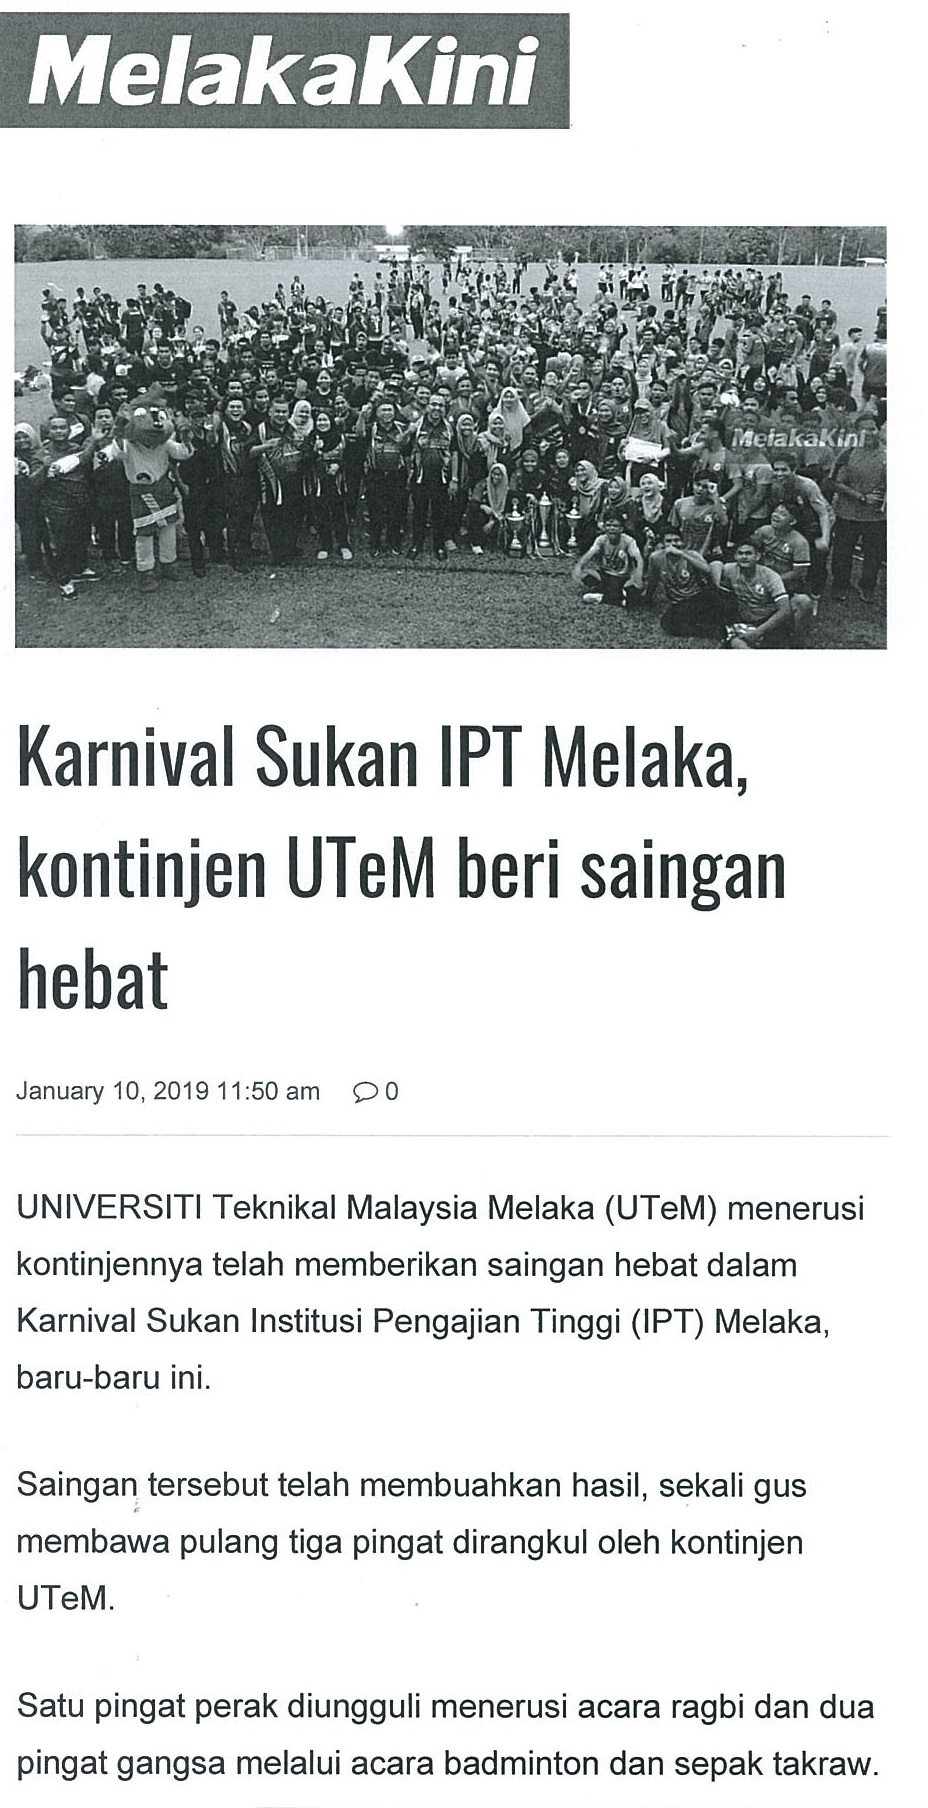 Karnival sukan IPT Melaka, kontinje UTeM beri saingan hebat (part1)